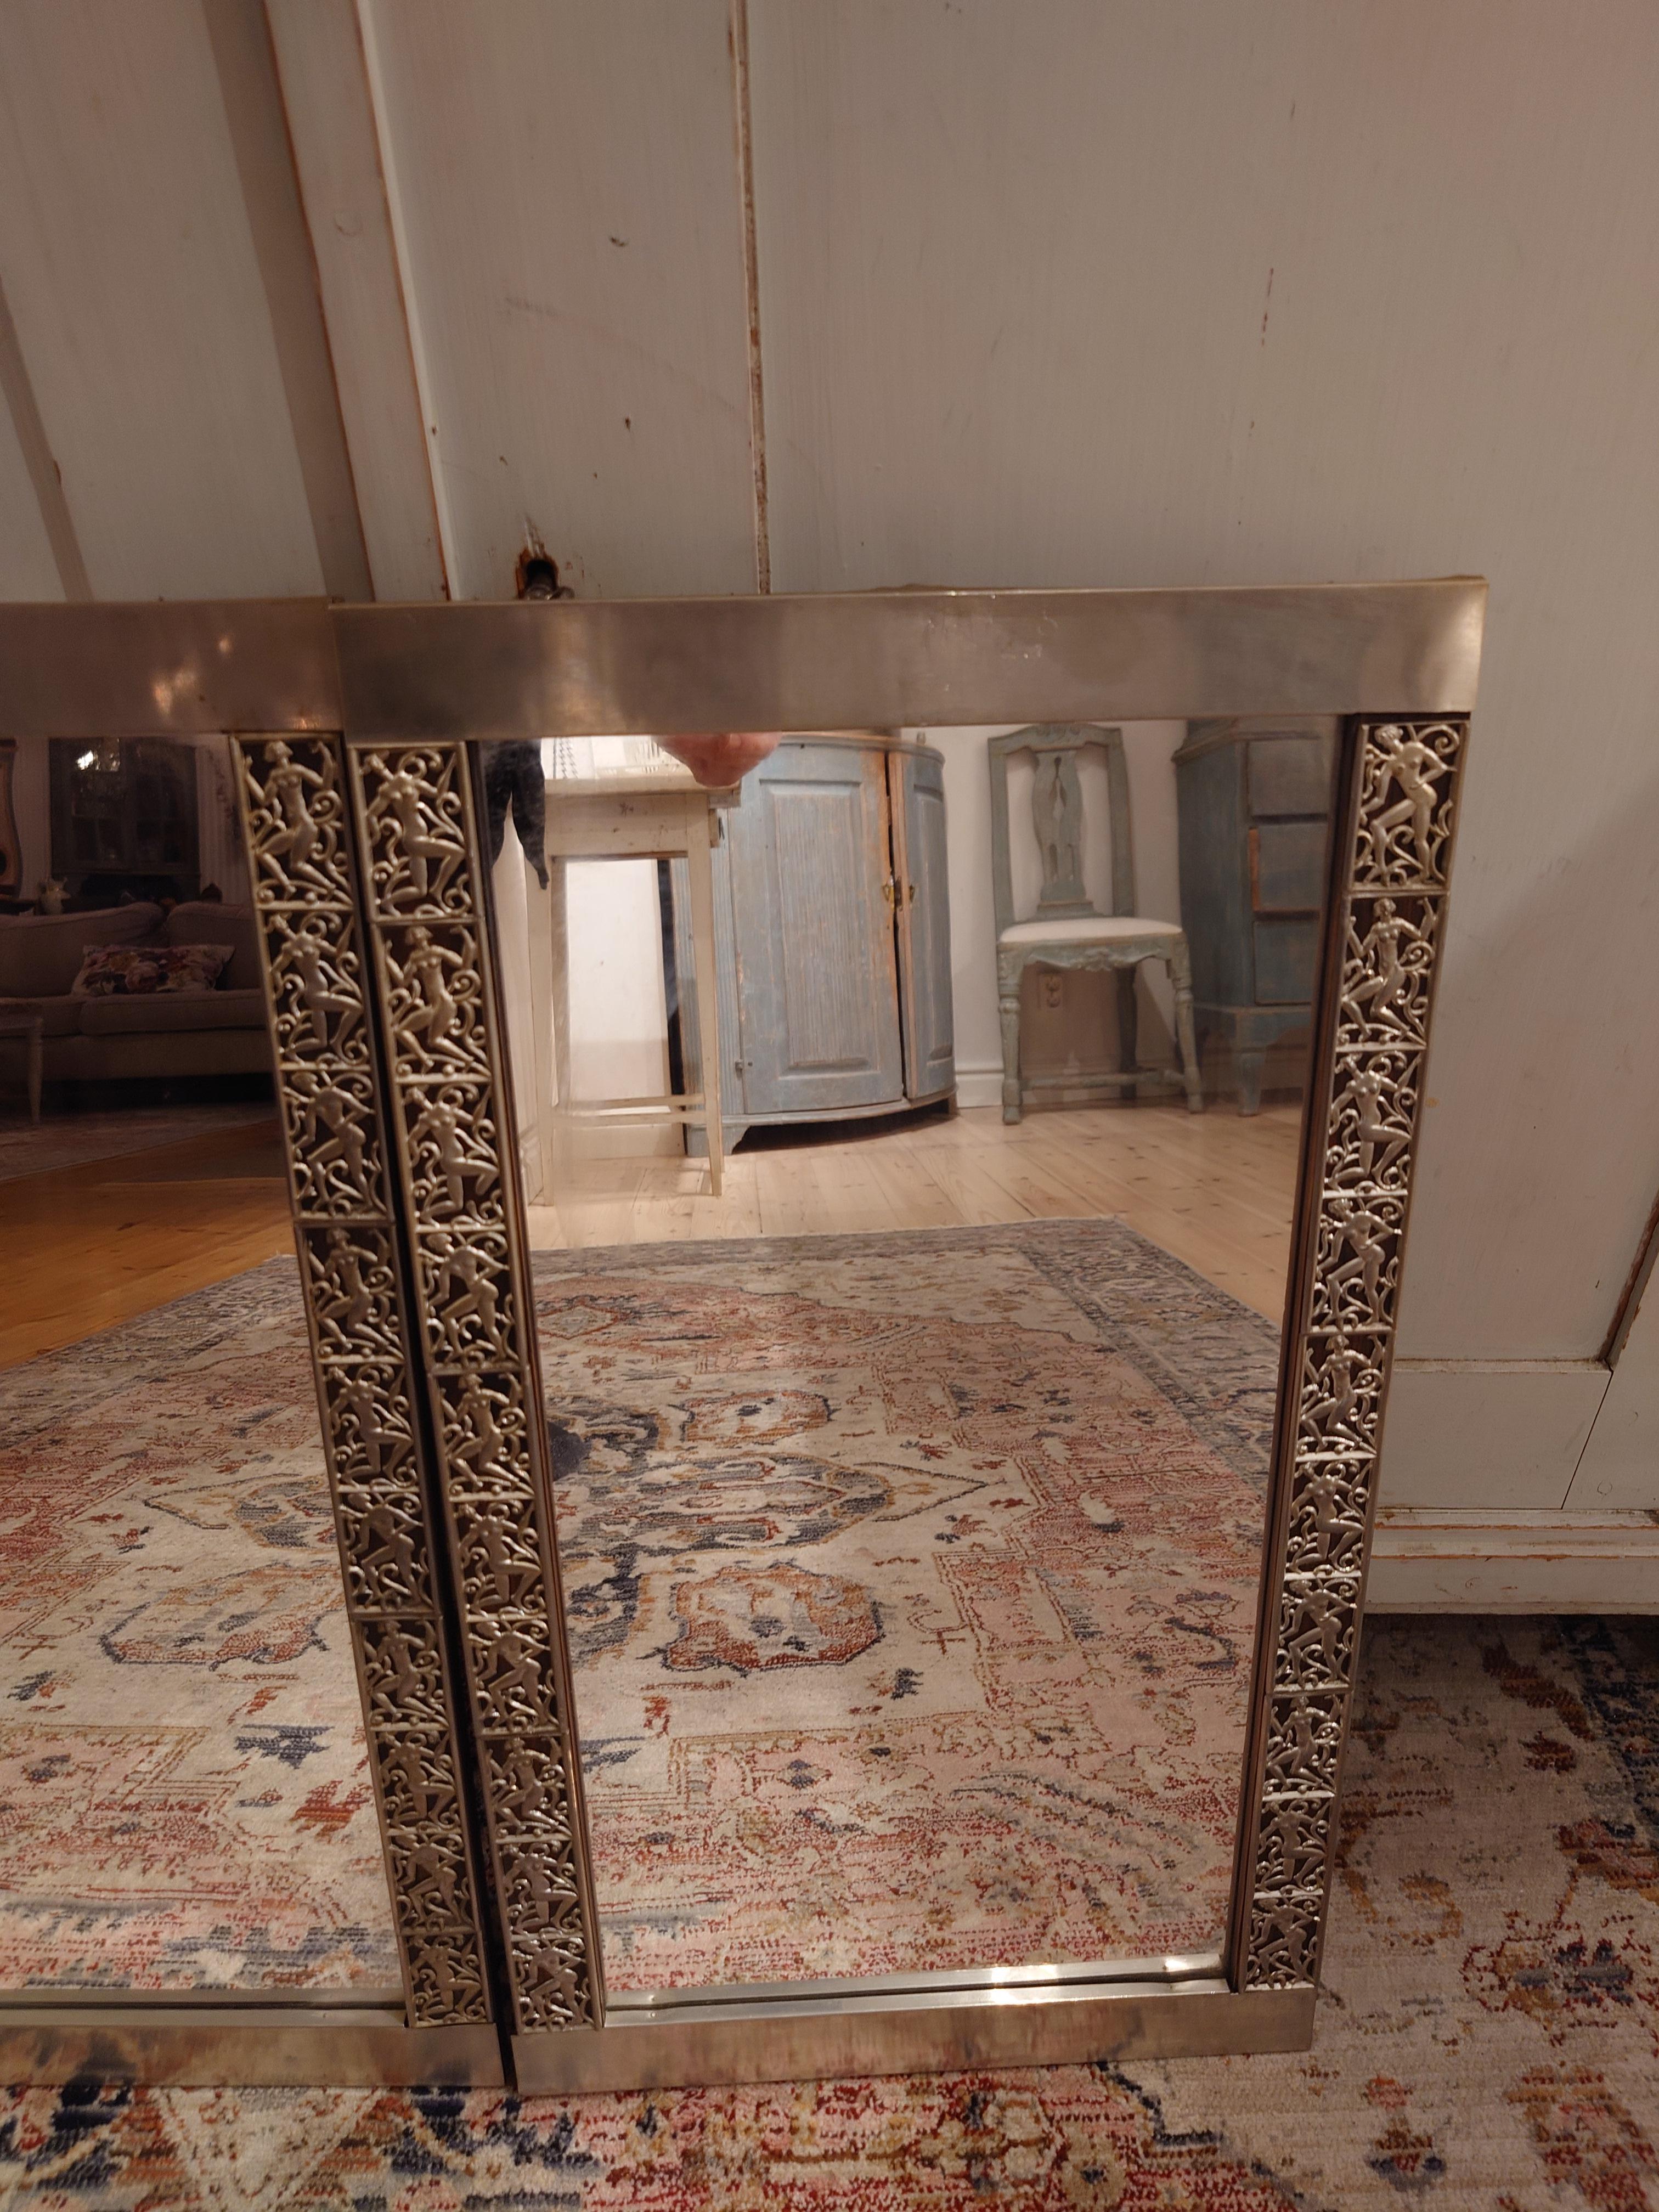 Exquisite 1920er Paar von  Zinnspiegel, von denen angenommen wird, dass sie hergestellt werden  von dem talentierten David Wretling. Geschmückt mit zarten, weiblichen Figuren.
Diese Spiegel fangen die Eleganz und den Charme der damaligen Zeit